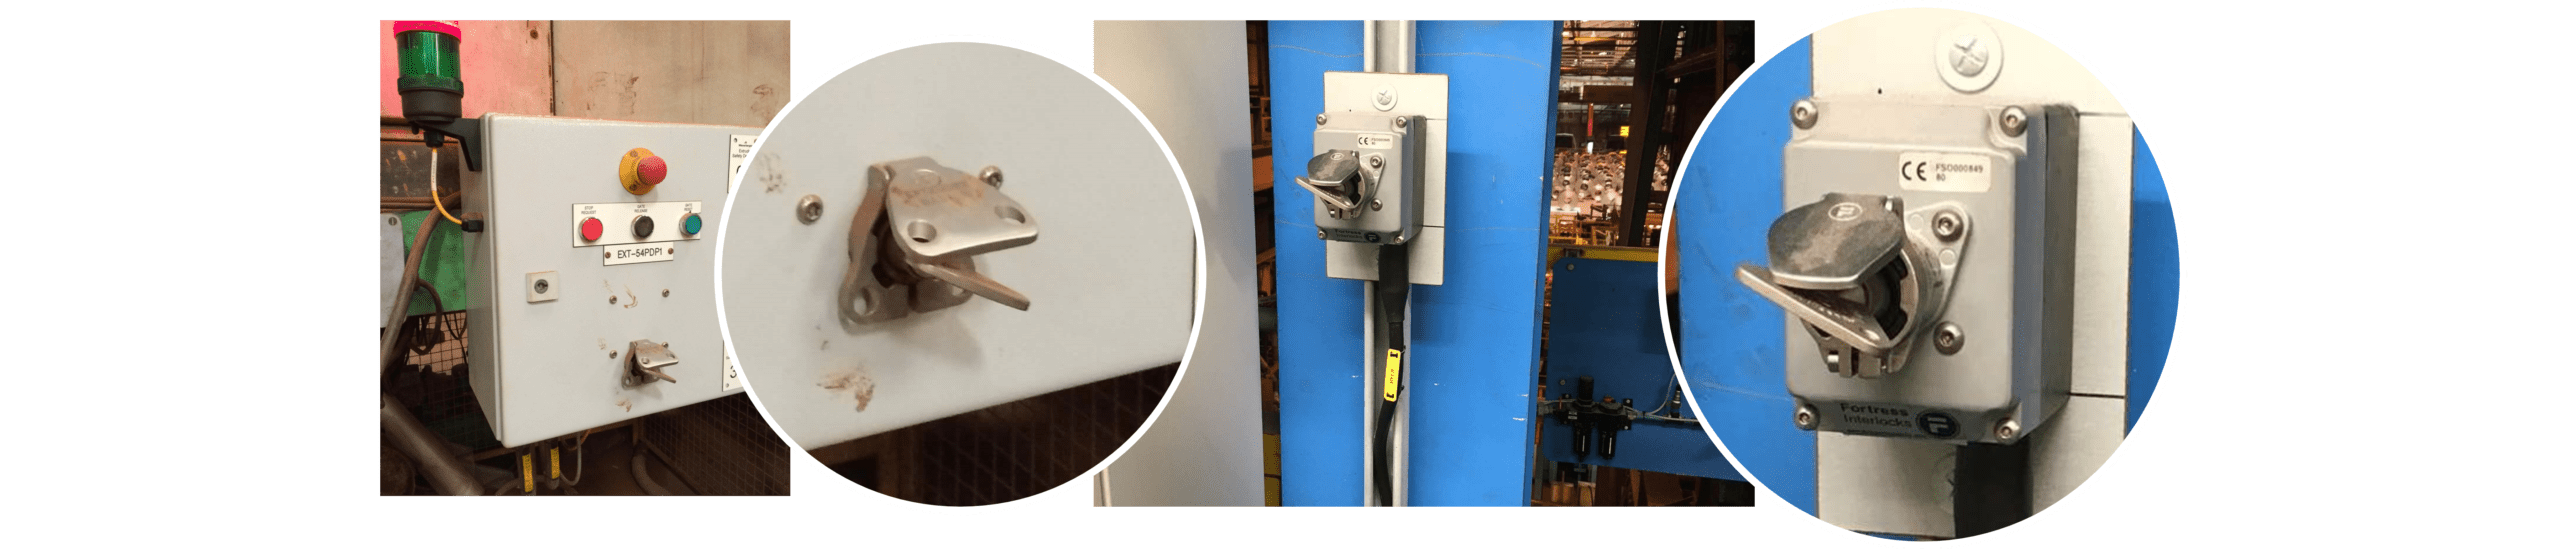 Key Switches Isolating Hazardous Electrical Energy